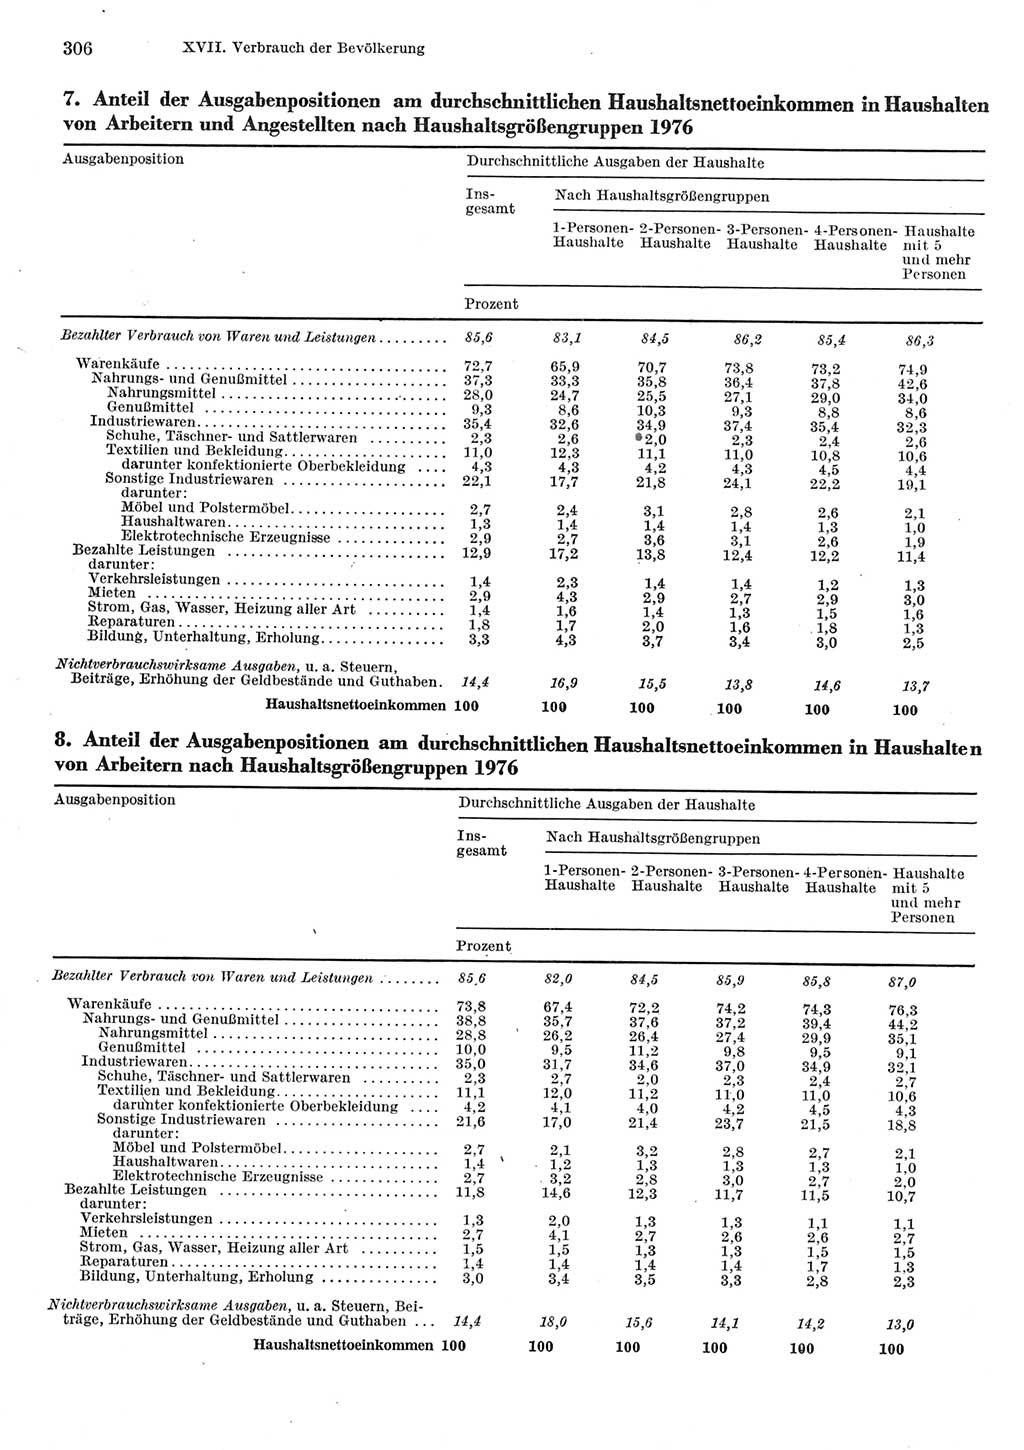 Statistisches Jahrbuch der Deutschen Demokratischen Republik (DDR) 1977, Seite 306 (Stat. Jb. DDR 1977, S. 306)